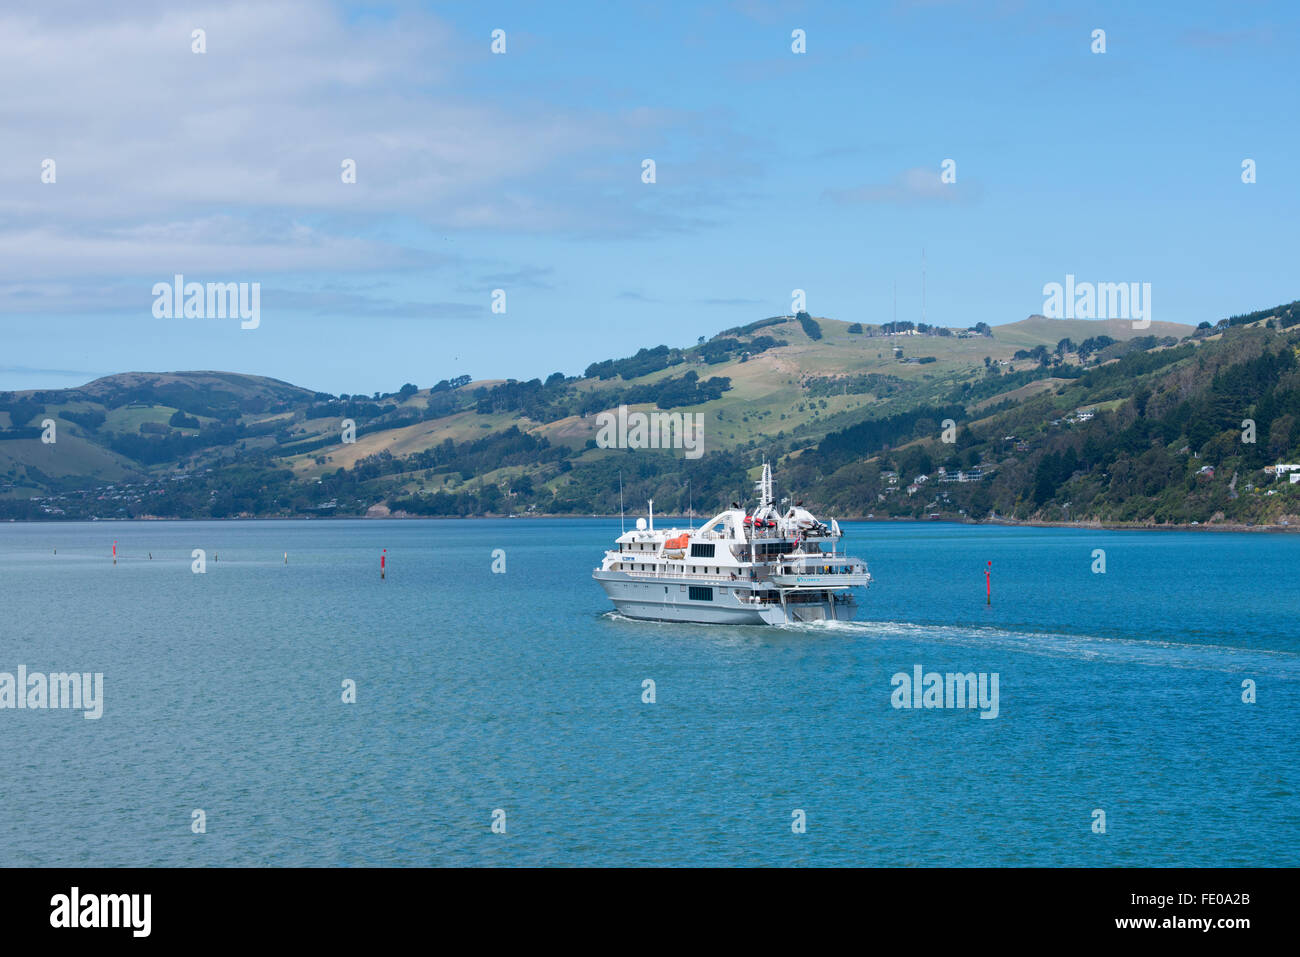 Nouvelle Zélande, île du Sud, Dunedin, Otago Peninsula, près de Port Chalmers. Expedition cruise ship, découvreur de corail. Banque D'Images